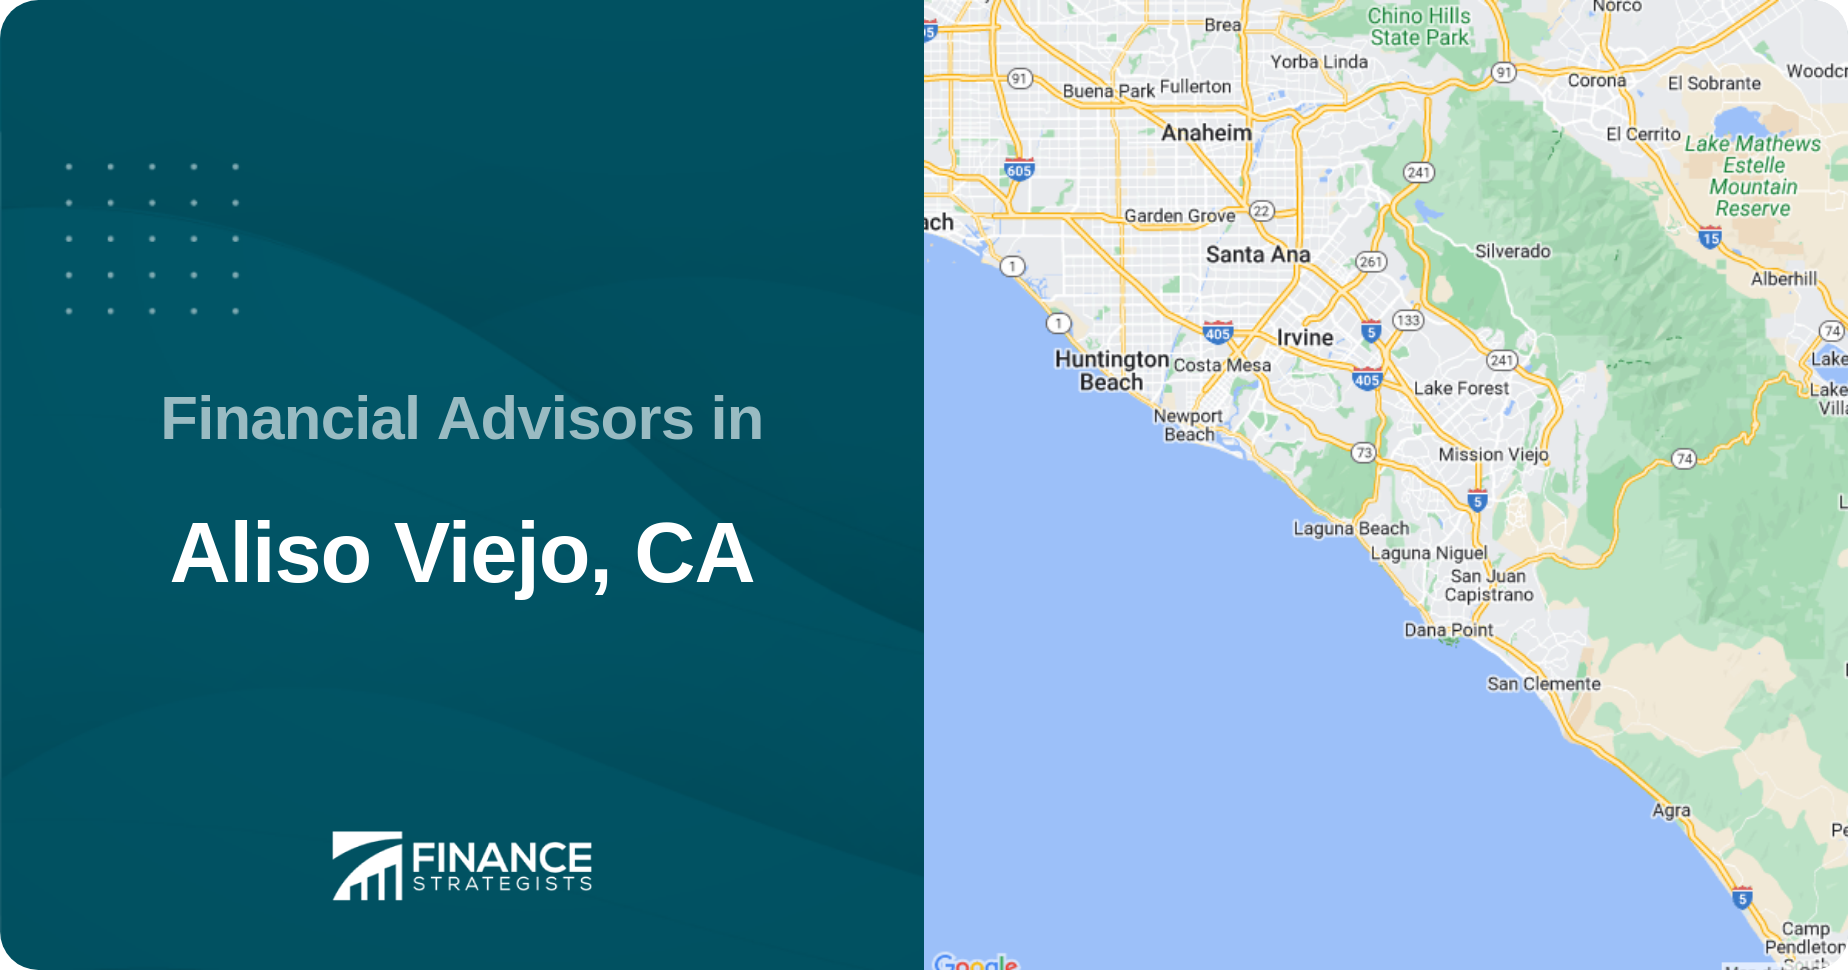 Financial Advisors in Aliso Viejo, CA